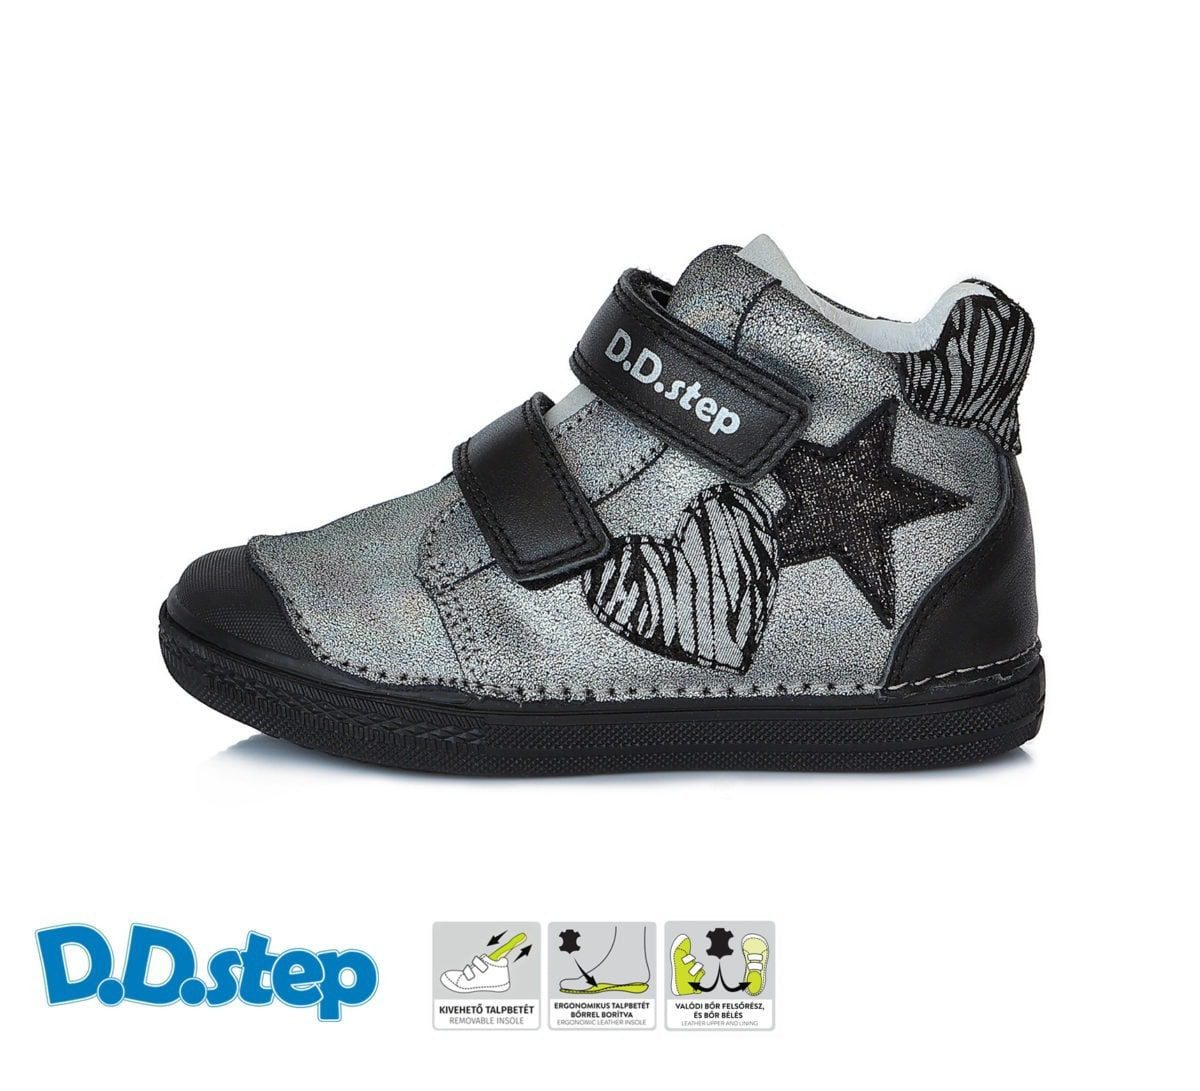 DD STEP Dievčenské členkové topánky s hviezdou čierne strieborné A049-769 | Welcomebaby.sk